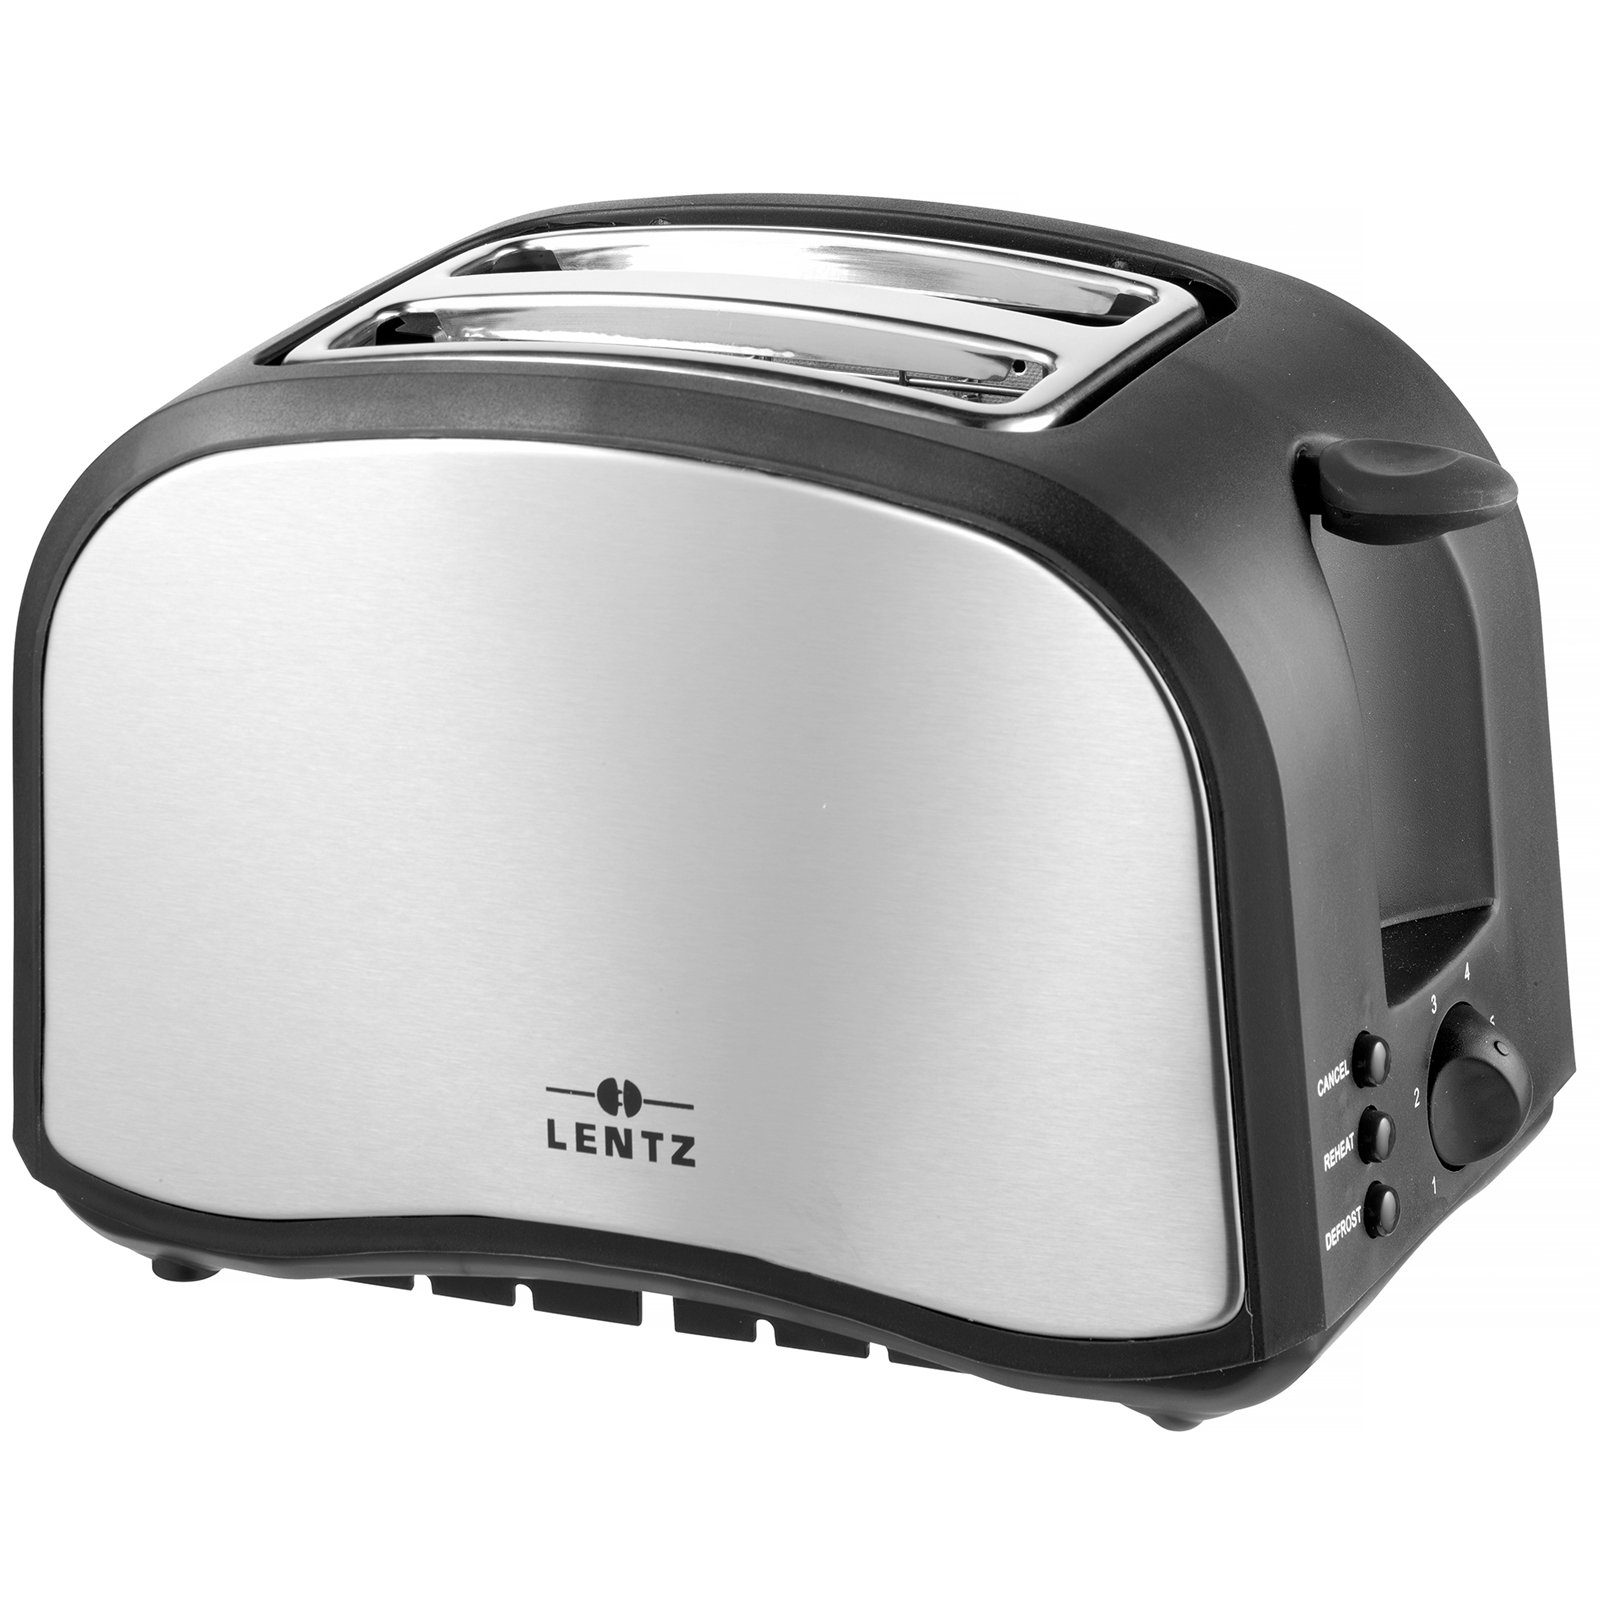 Lentz Toaster 2 Scheiben-Toaster Schwarz, Toast, Scheiben für W 800 2 2-Schlitz-Toaster, Silber